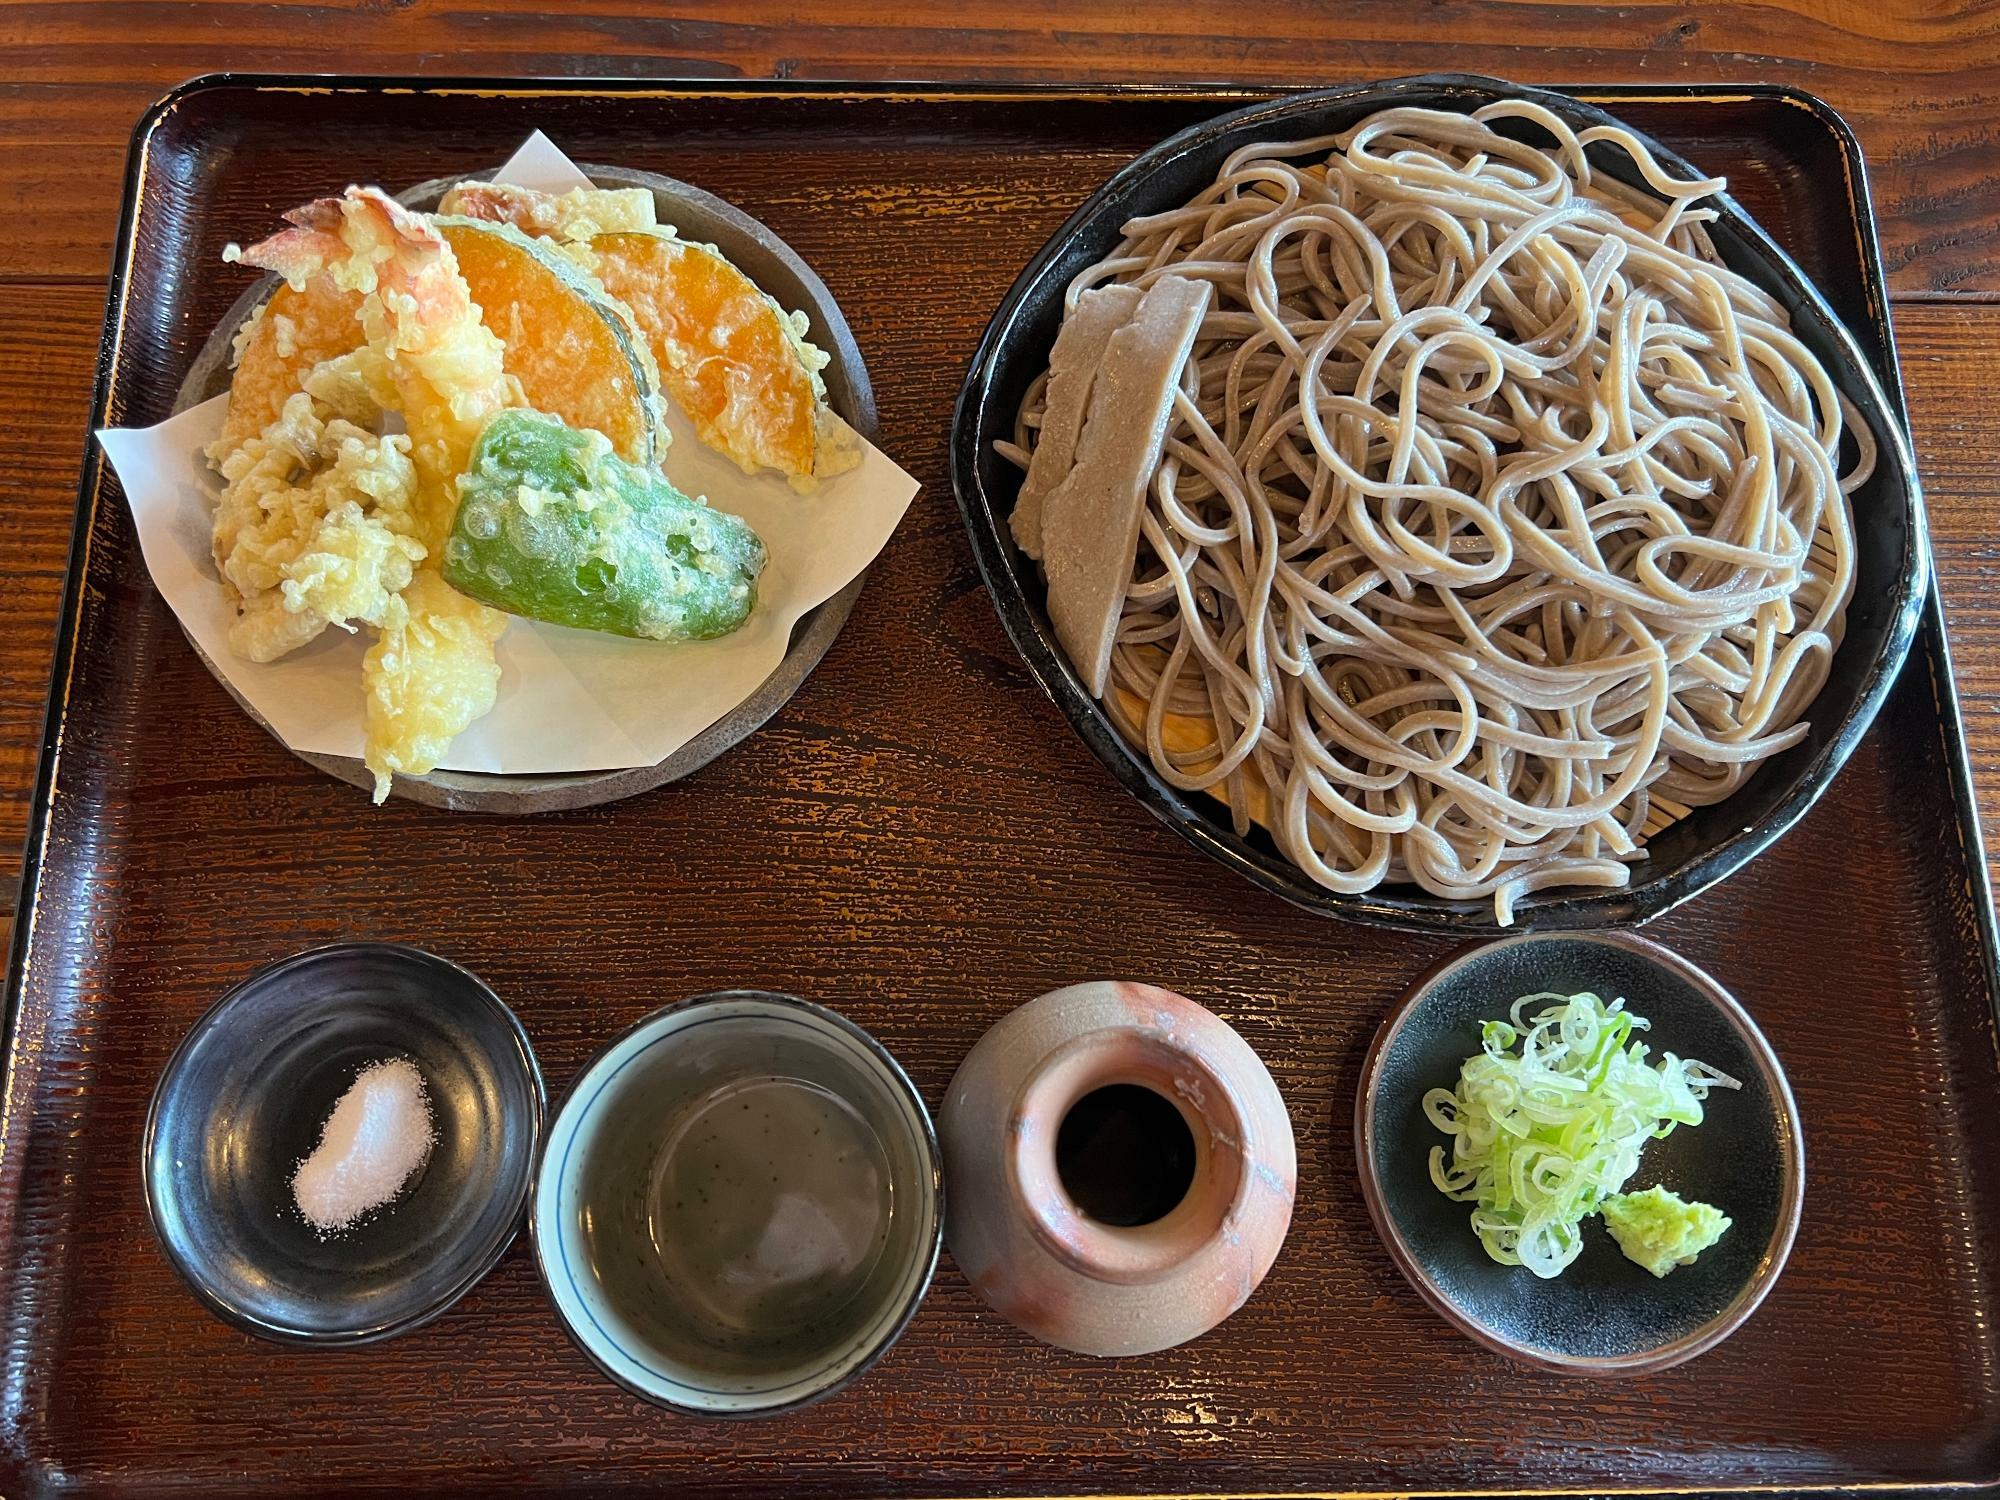 「天もり（1,500円）」海老、野菜たっぷりの満足度高い天ぷら。そばの端っこ付き（太いやつ）